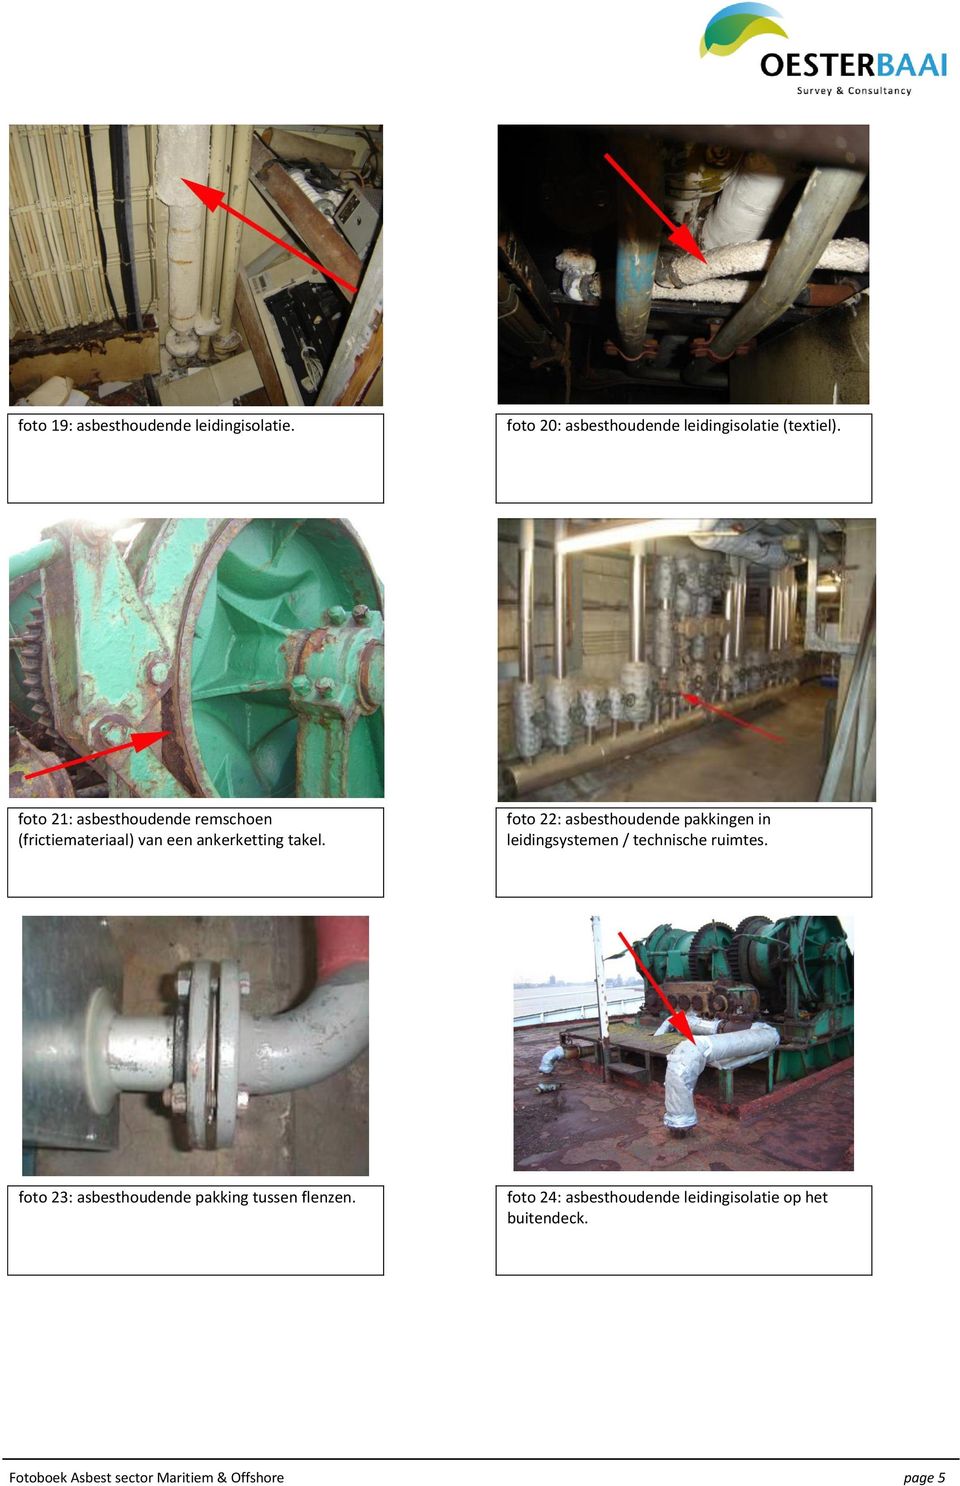 foto 22: asbesthoudende pakkingen in leidingsystemen / technische ruimtes.